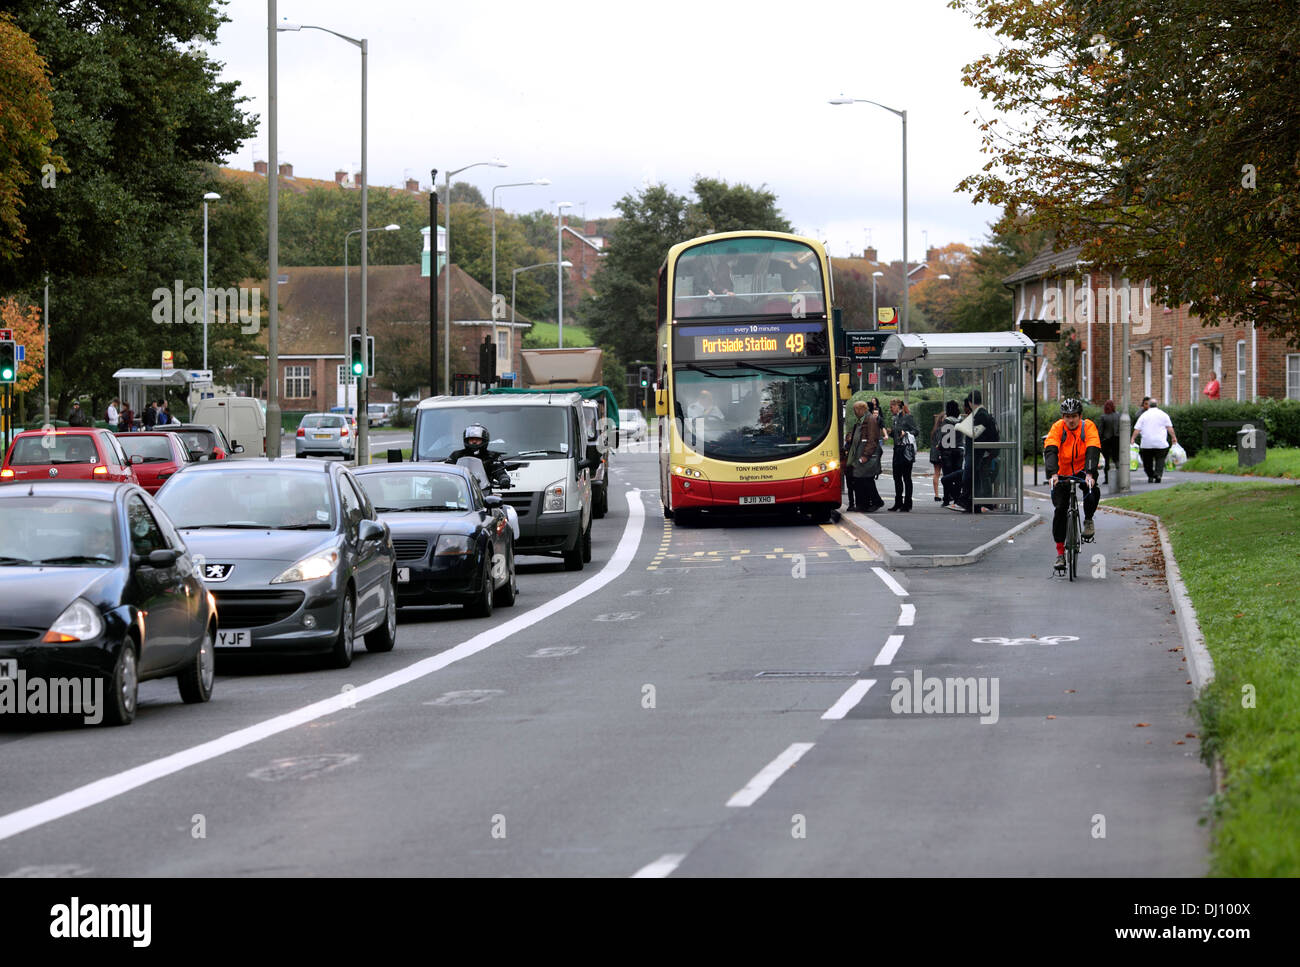 Voie routière et voie cyclable séparée, Lewes Road, Brighton. L'arrêt de bus est placé entre le bus lane et voie cyclable. Banque D'Images